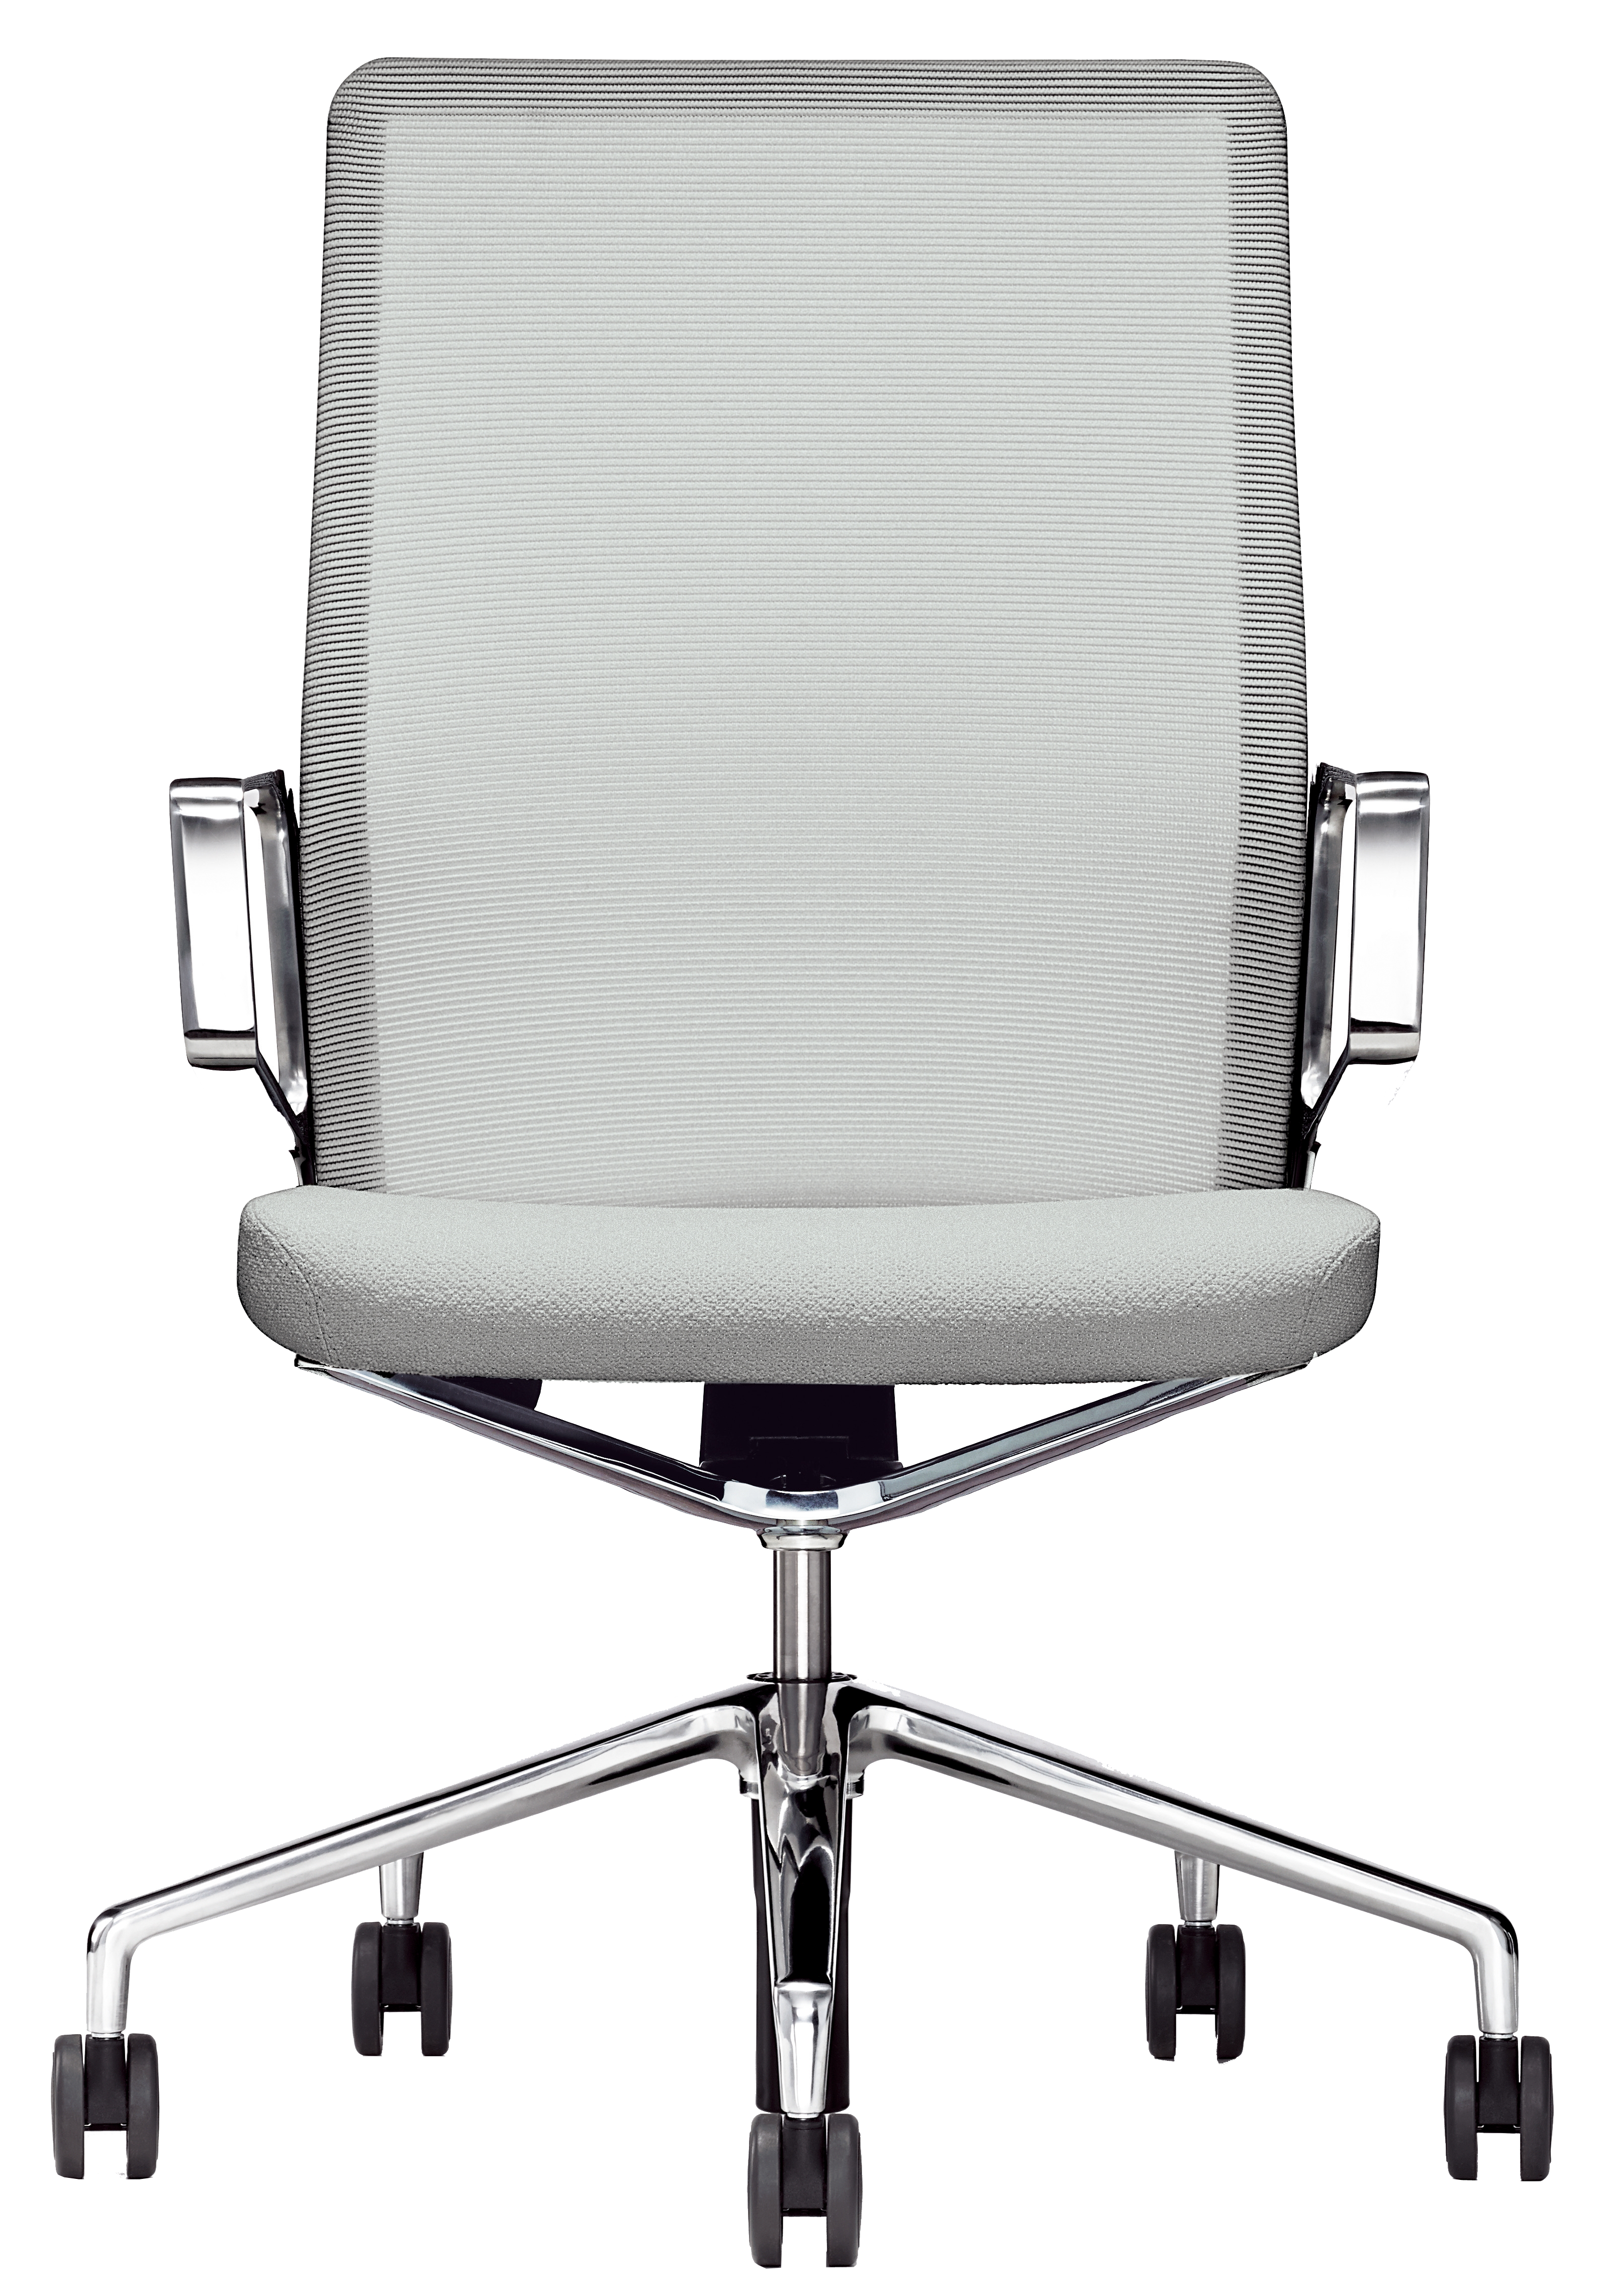 ただ一つのレバーがつくる、座りごこちとモダン・デザイン。 オフィスに調和するシンプルで美しいモダンデザインなチェアです。KH-11には無骨なレバー類はありません。高さを調整するたったひとつの小さなレバーがあるだけ。その他の調整はすべて、この椅子がやってくれるのです。座るたびに感動が訪れるKH-11。選ばれたエグゼクティブだけにお座りいただきたい。